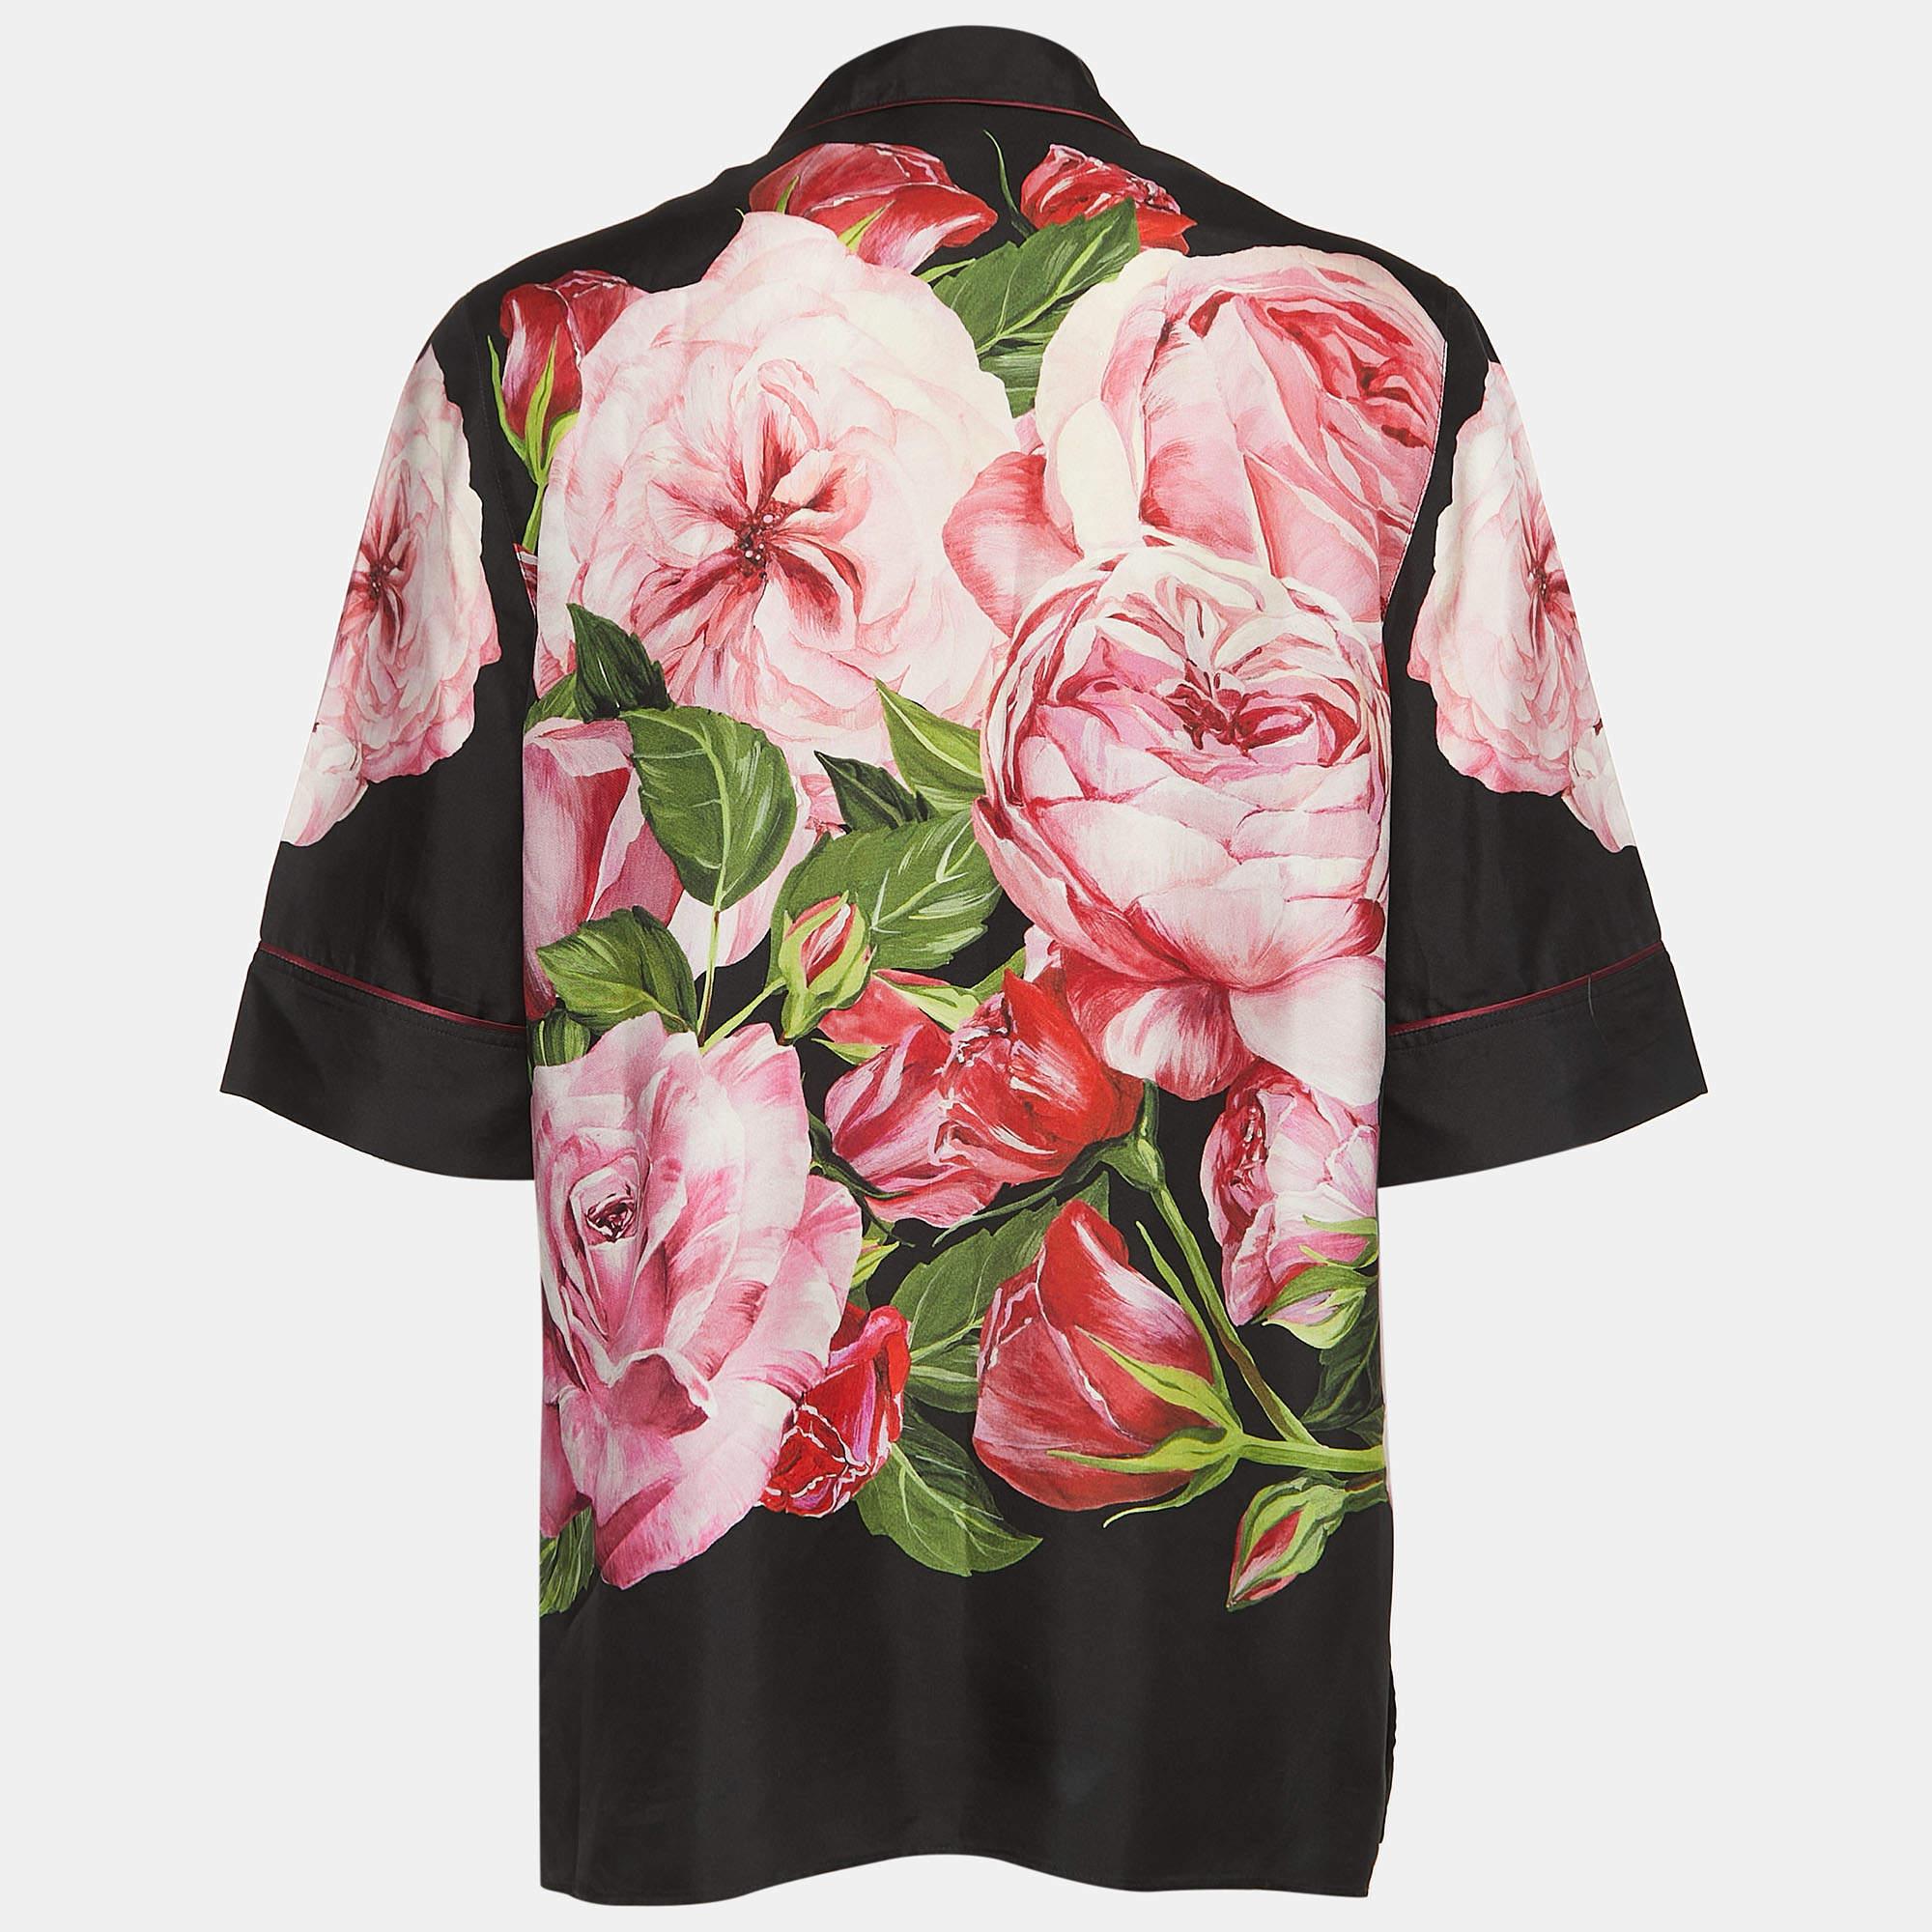 Le haut de pyjama Dolce & Gabbana respire le luxe avec son somptueux tissu de soie et ses motifs floraux complexes. La base noire met en valeur les fleurs vibrantes, créant une esthétique à la fois sophistiquée et ludique. Parfait pour se prélasser